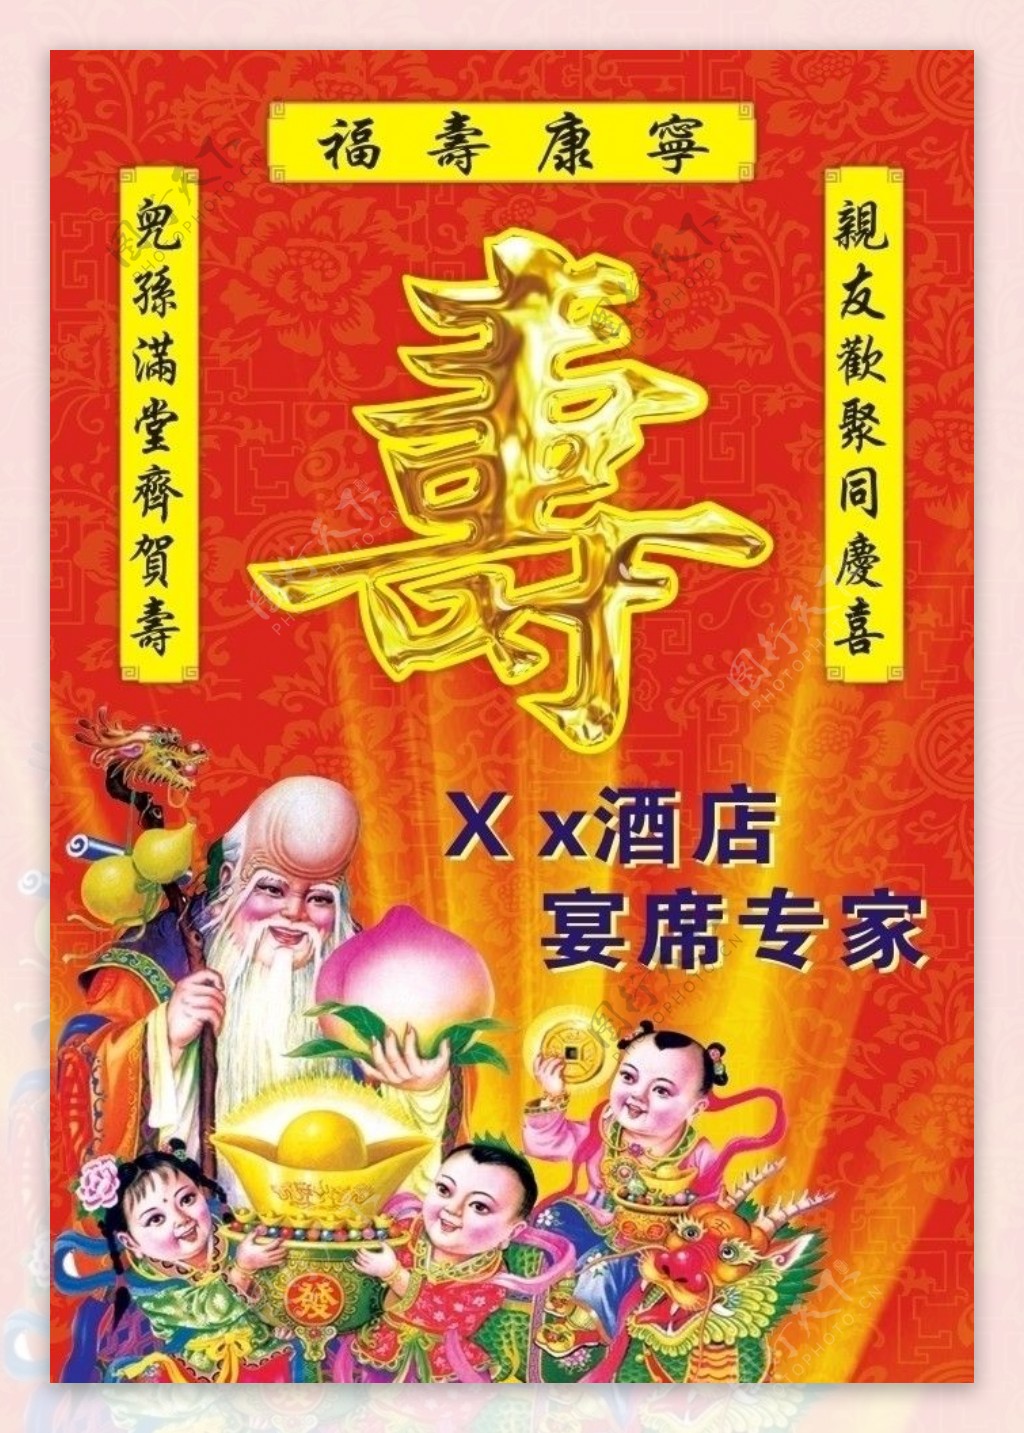 寿寿桃仙翁仙童酒店海报